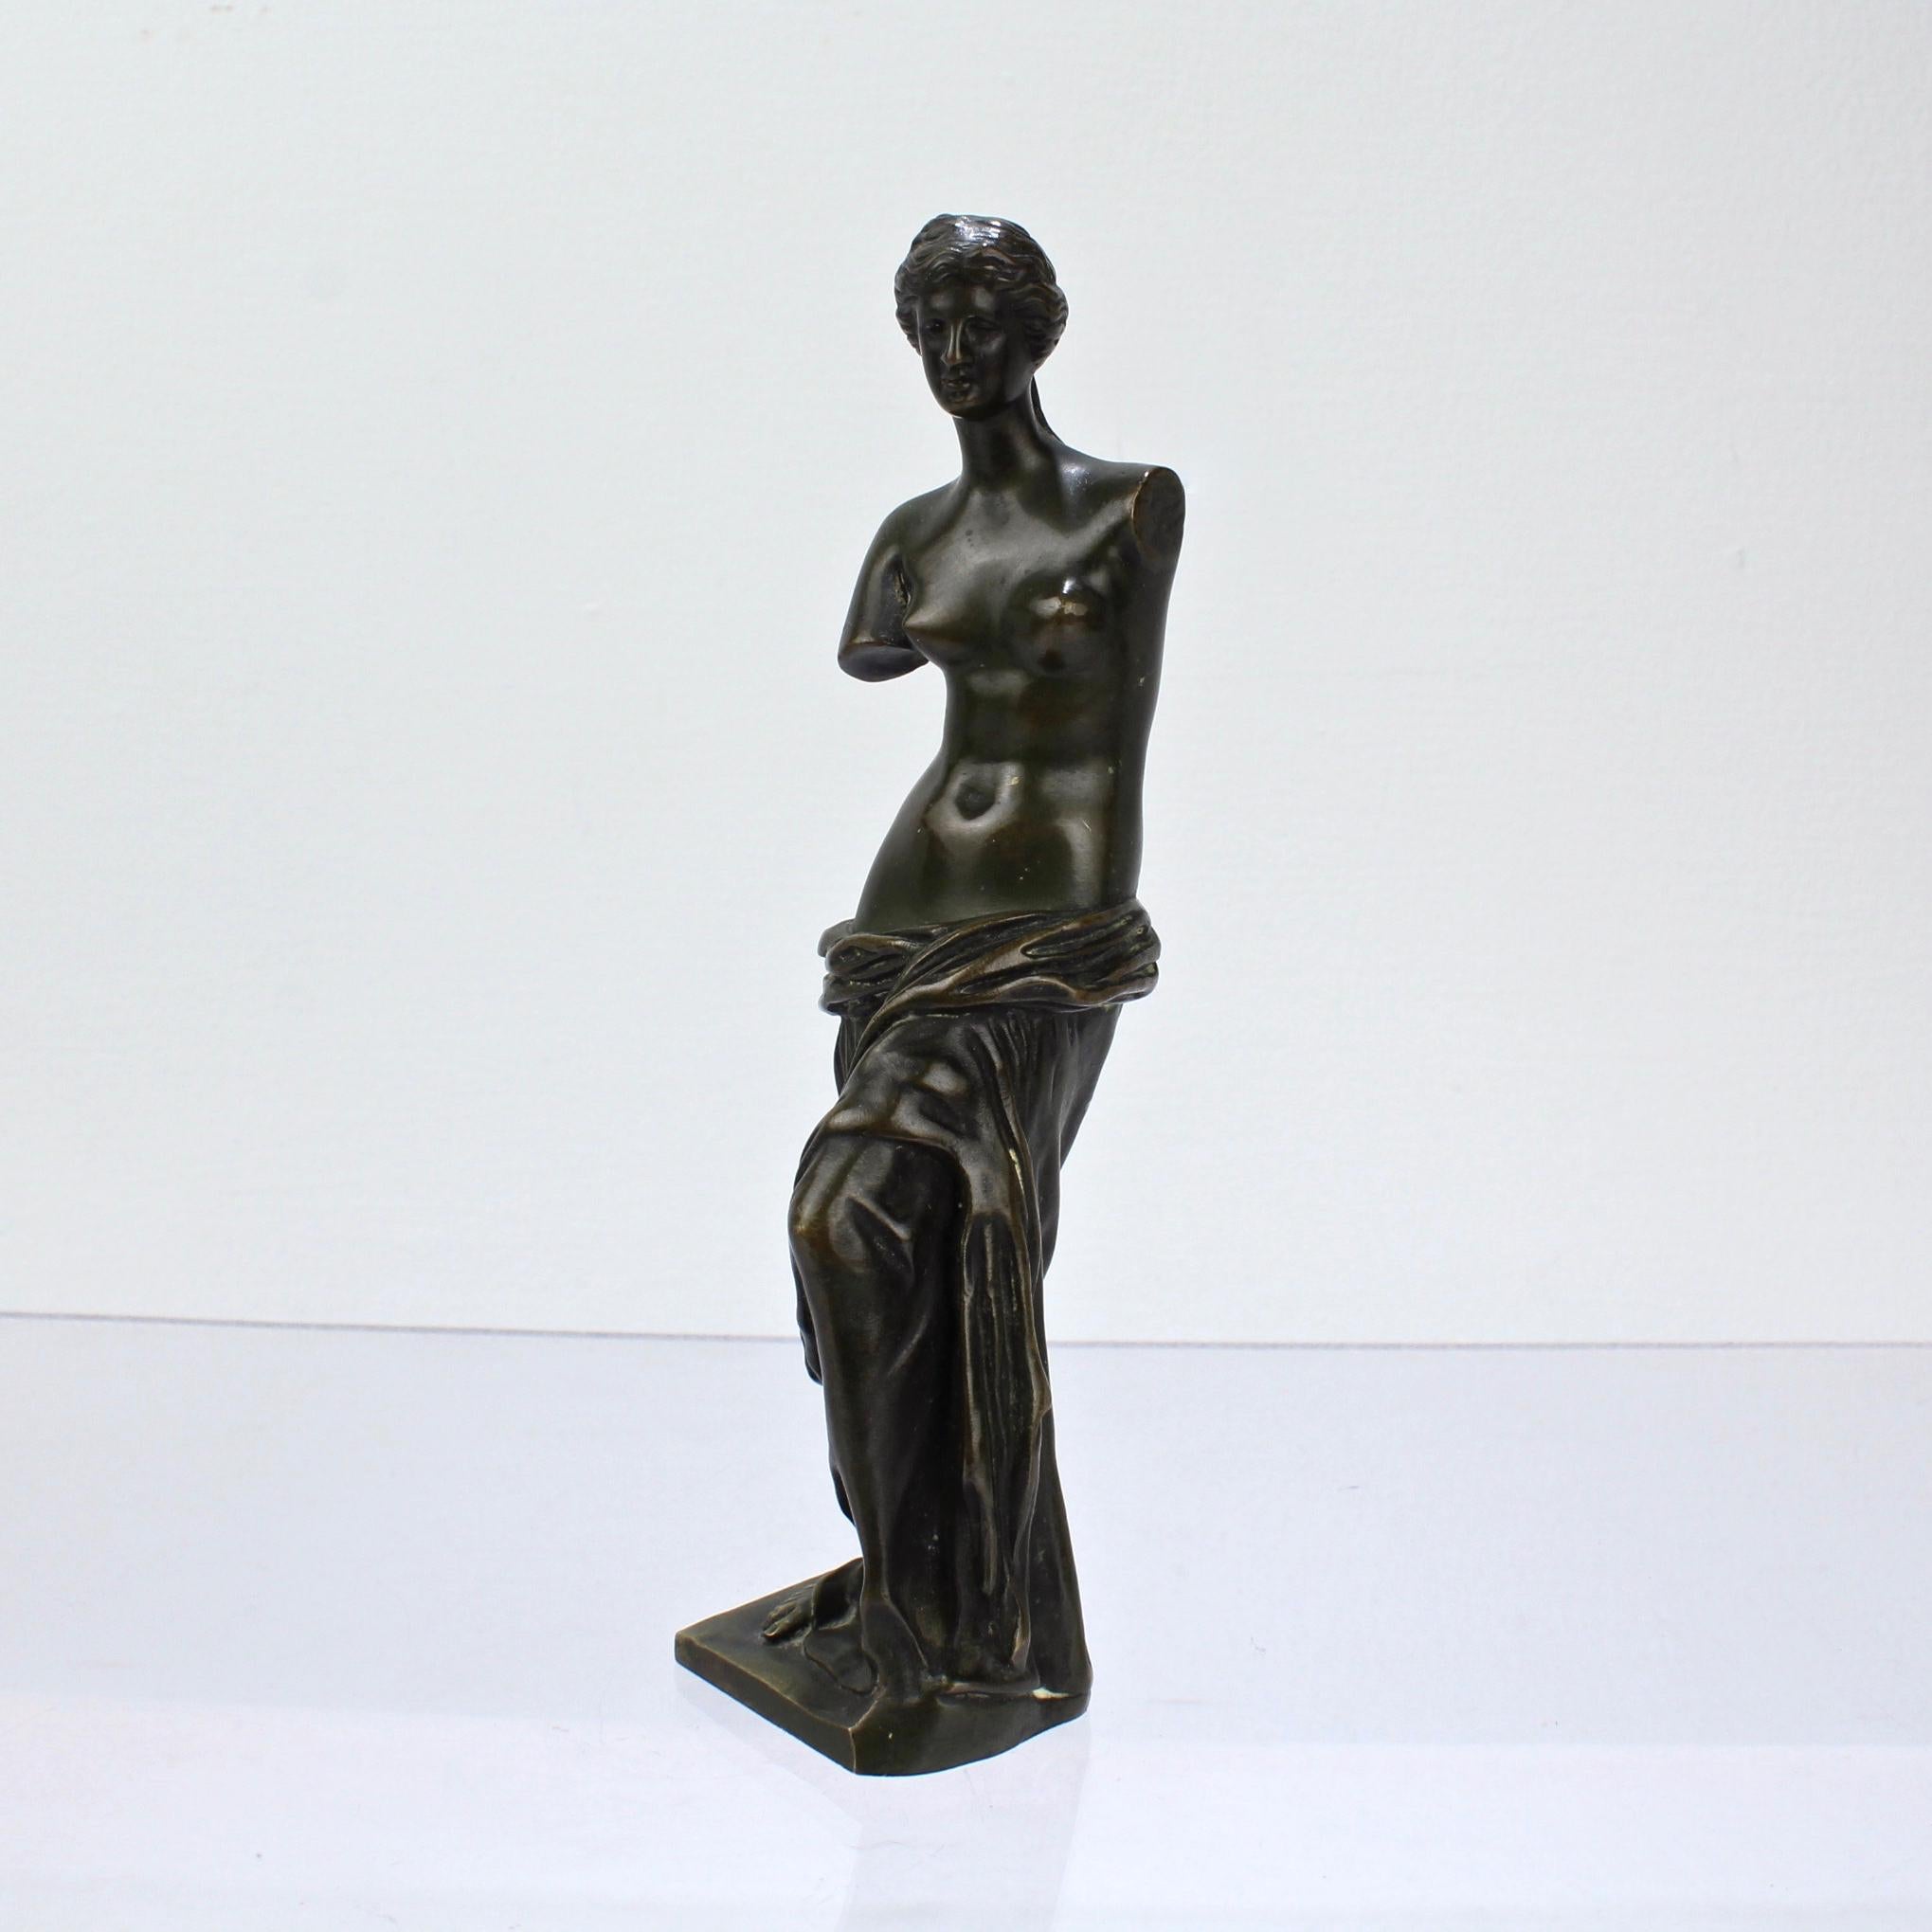 Un beau bronze de la Vénus de Milo d'après Sauvage.

De taille réduite, il est parfait pour le bureau, la cheminée ou la vitrine. 

Il s'agit tout simplement d'un magnifique petit bronze dans la tradition des objets du Grand Tour ou de la